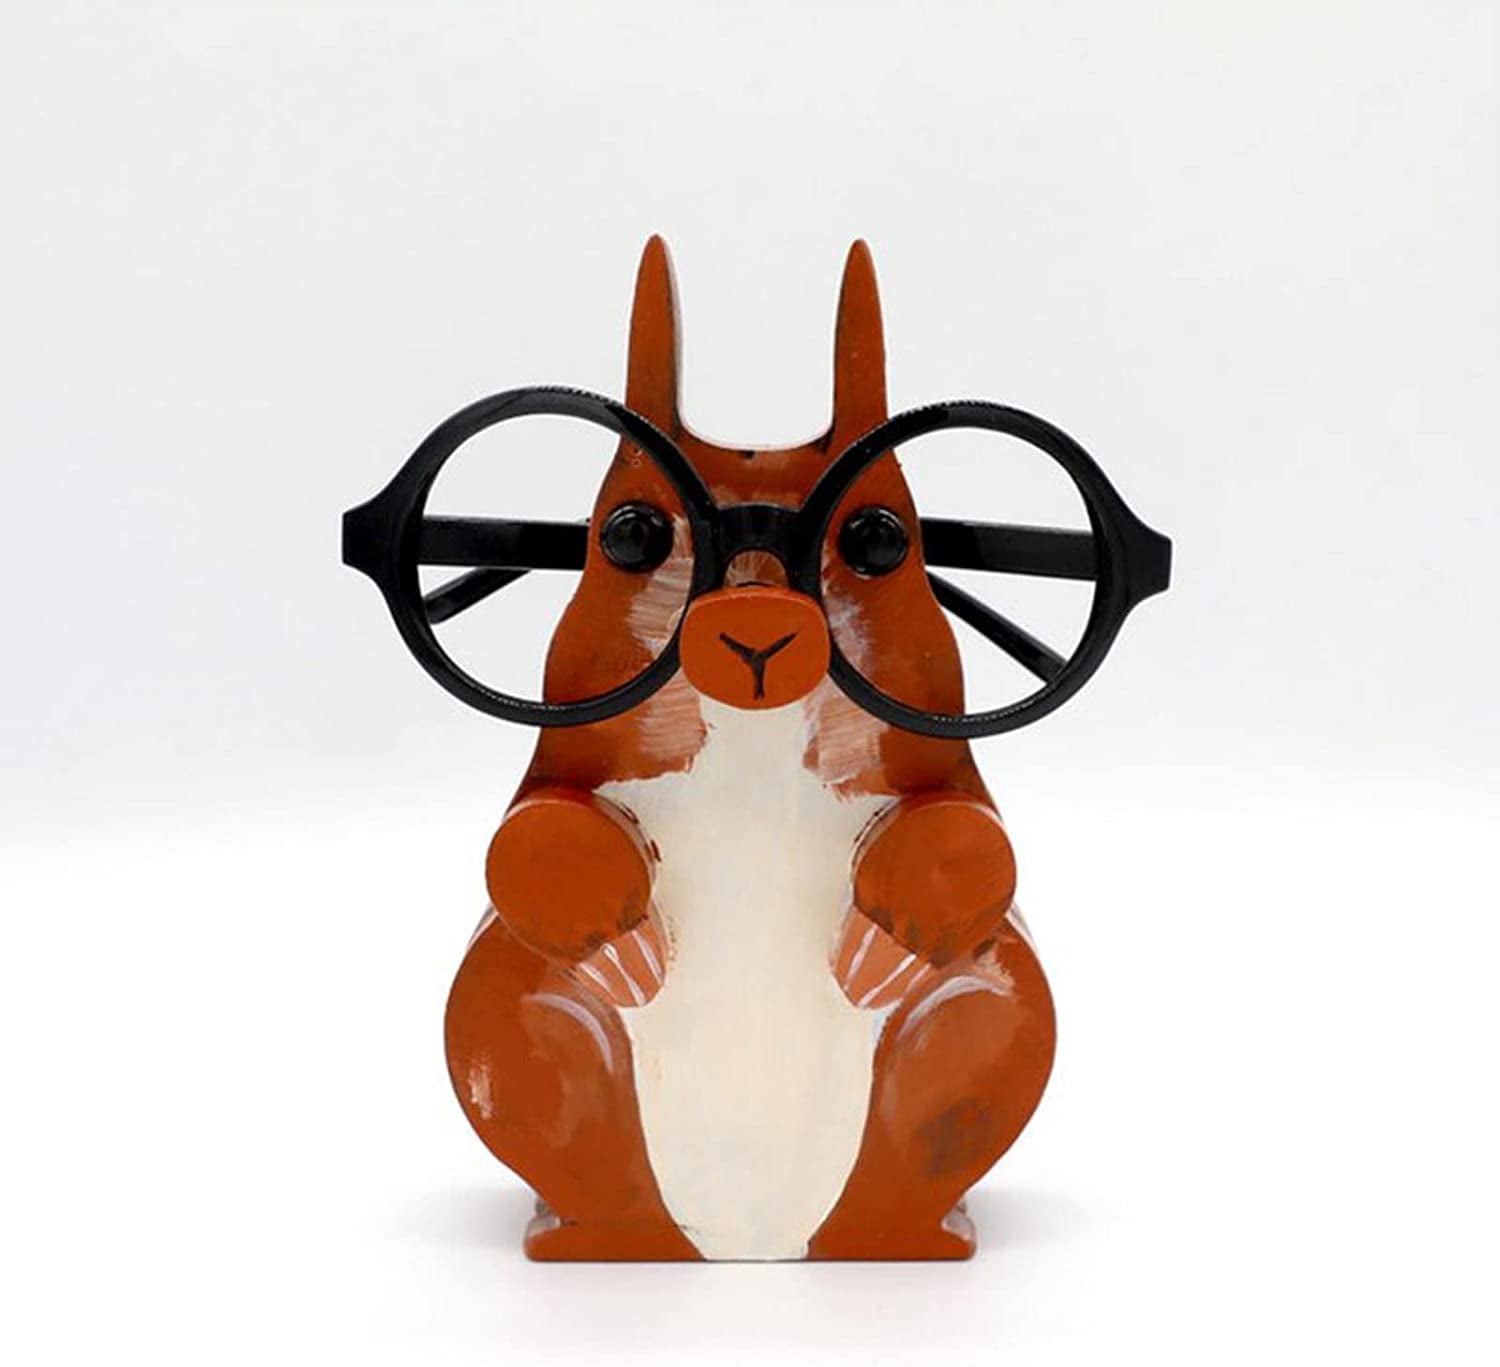 Animal Glasses Holder Stand,Creative Wooden Animal Eyeglass Holder for  Kids, Universal Handmade Glasses Sunglasses Display Stand for Living Room  Frame